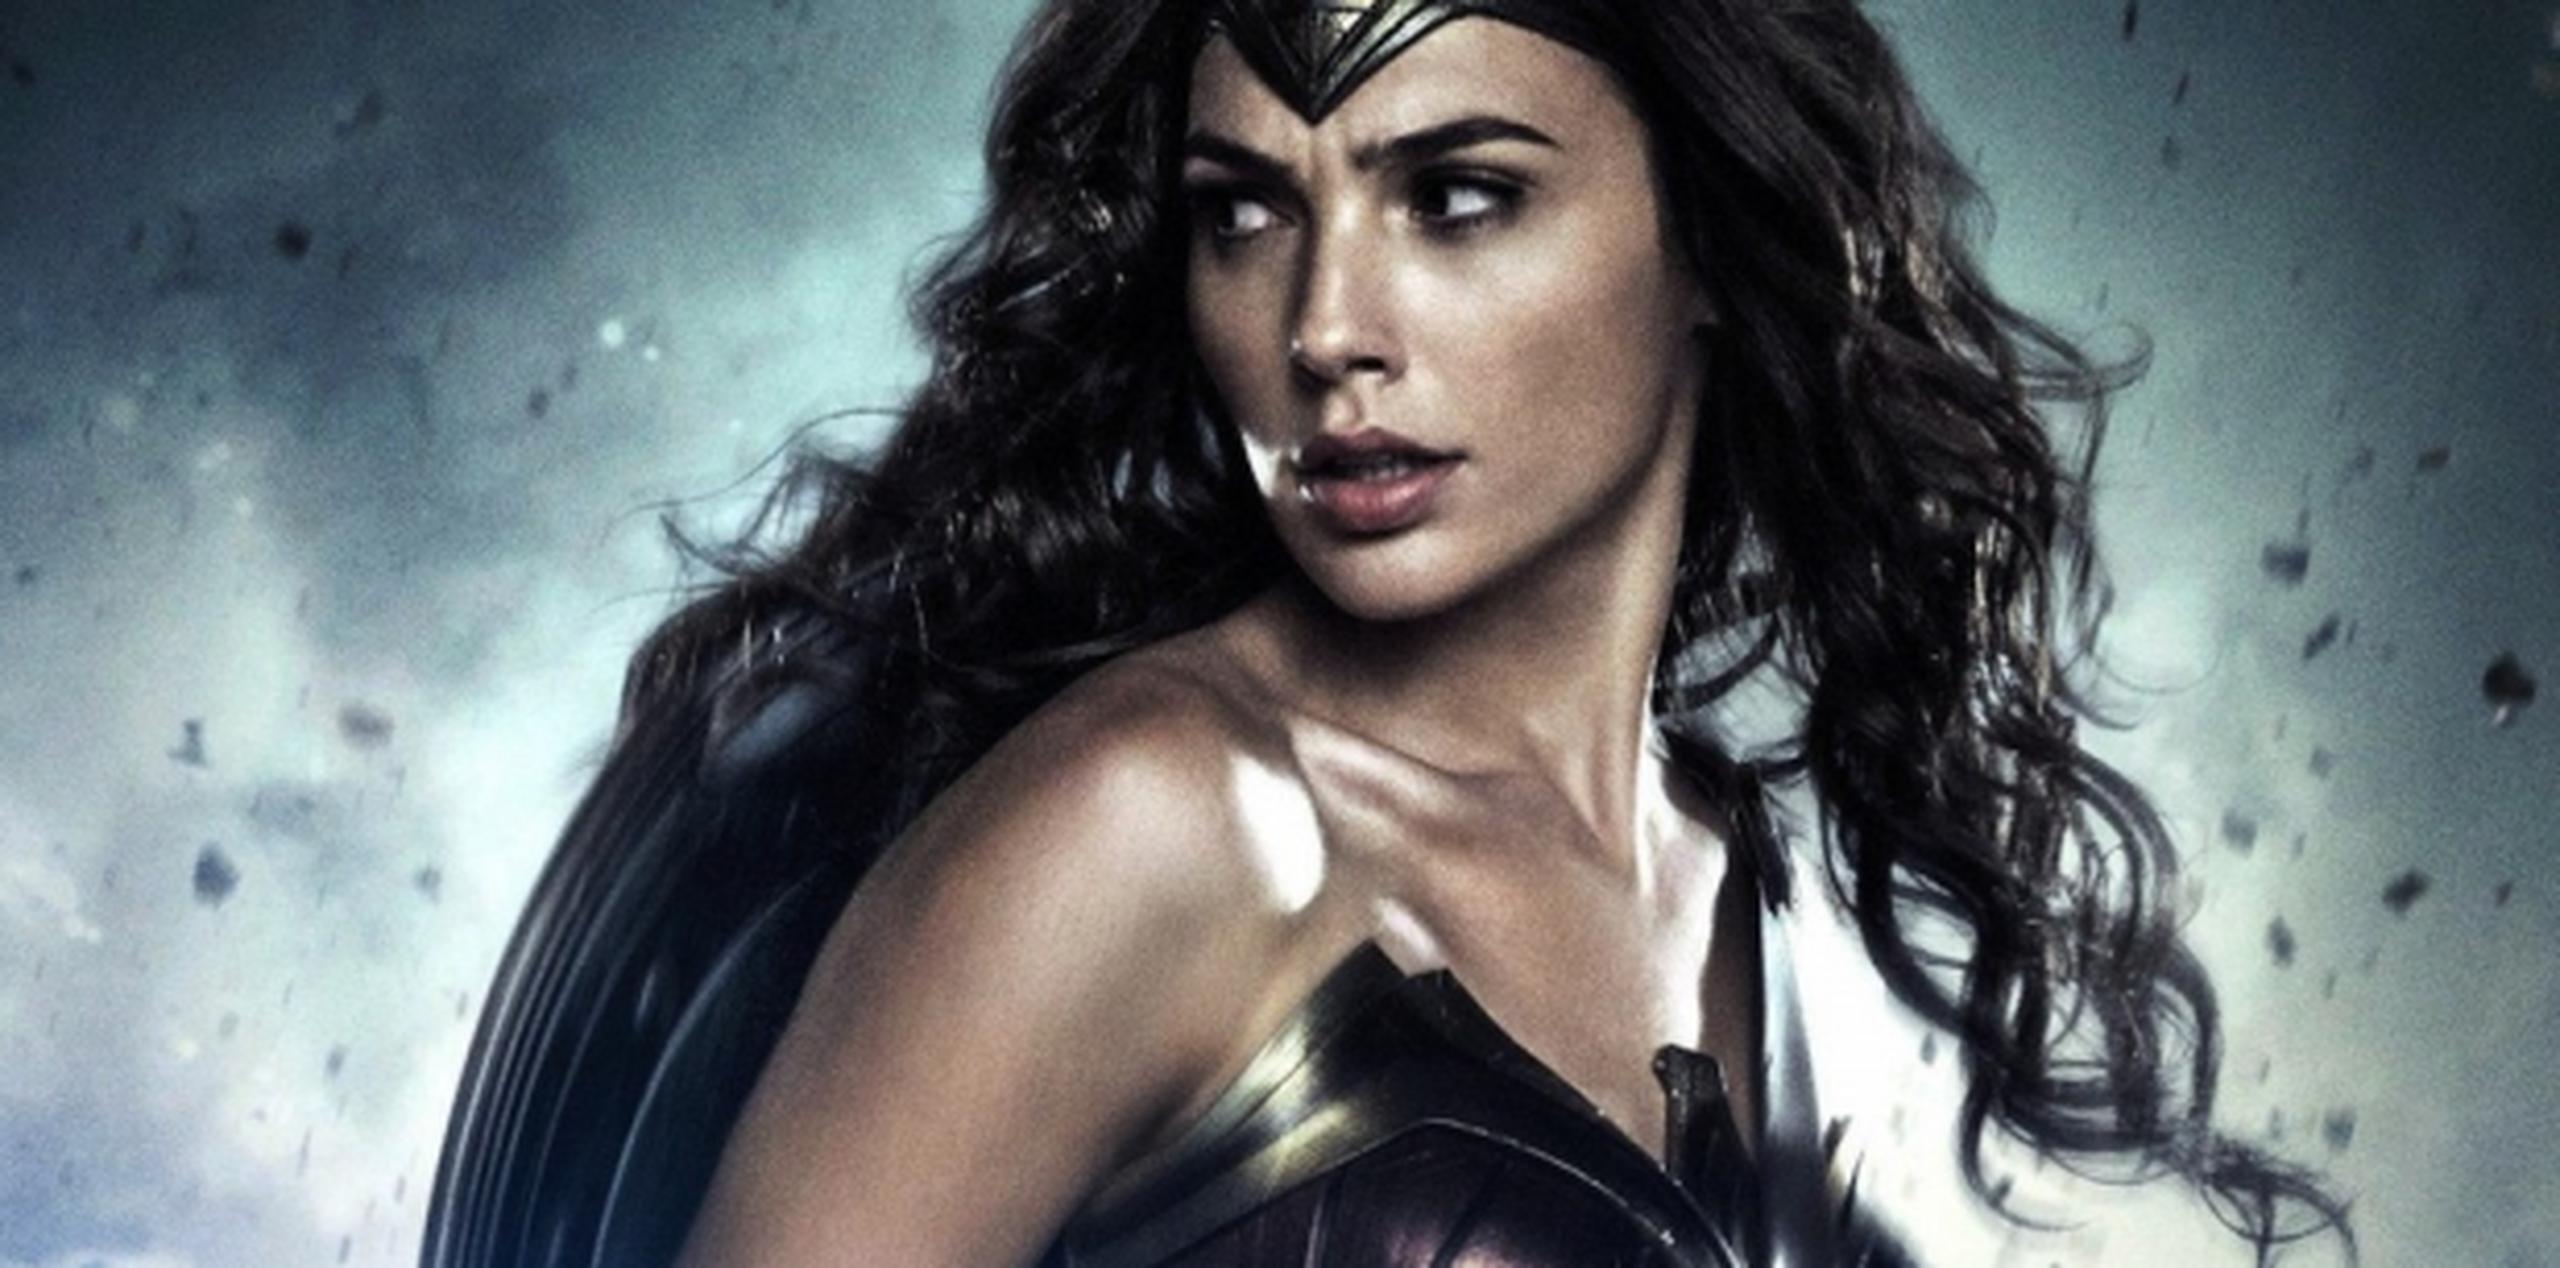 Gal Gadot recibió buenas críticas en  "Batman V Superman: Dawn of Justice" por su papel de la Mujer Maravilla. (Foto/Warner Bros.)